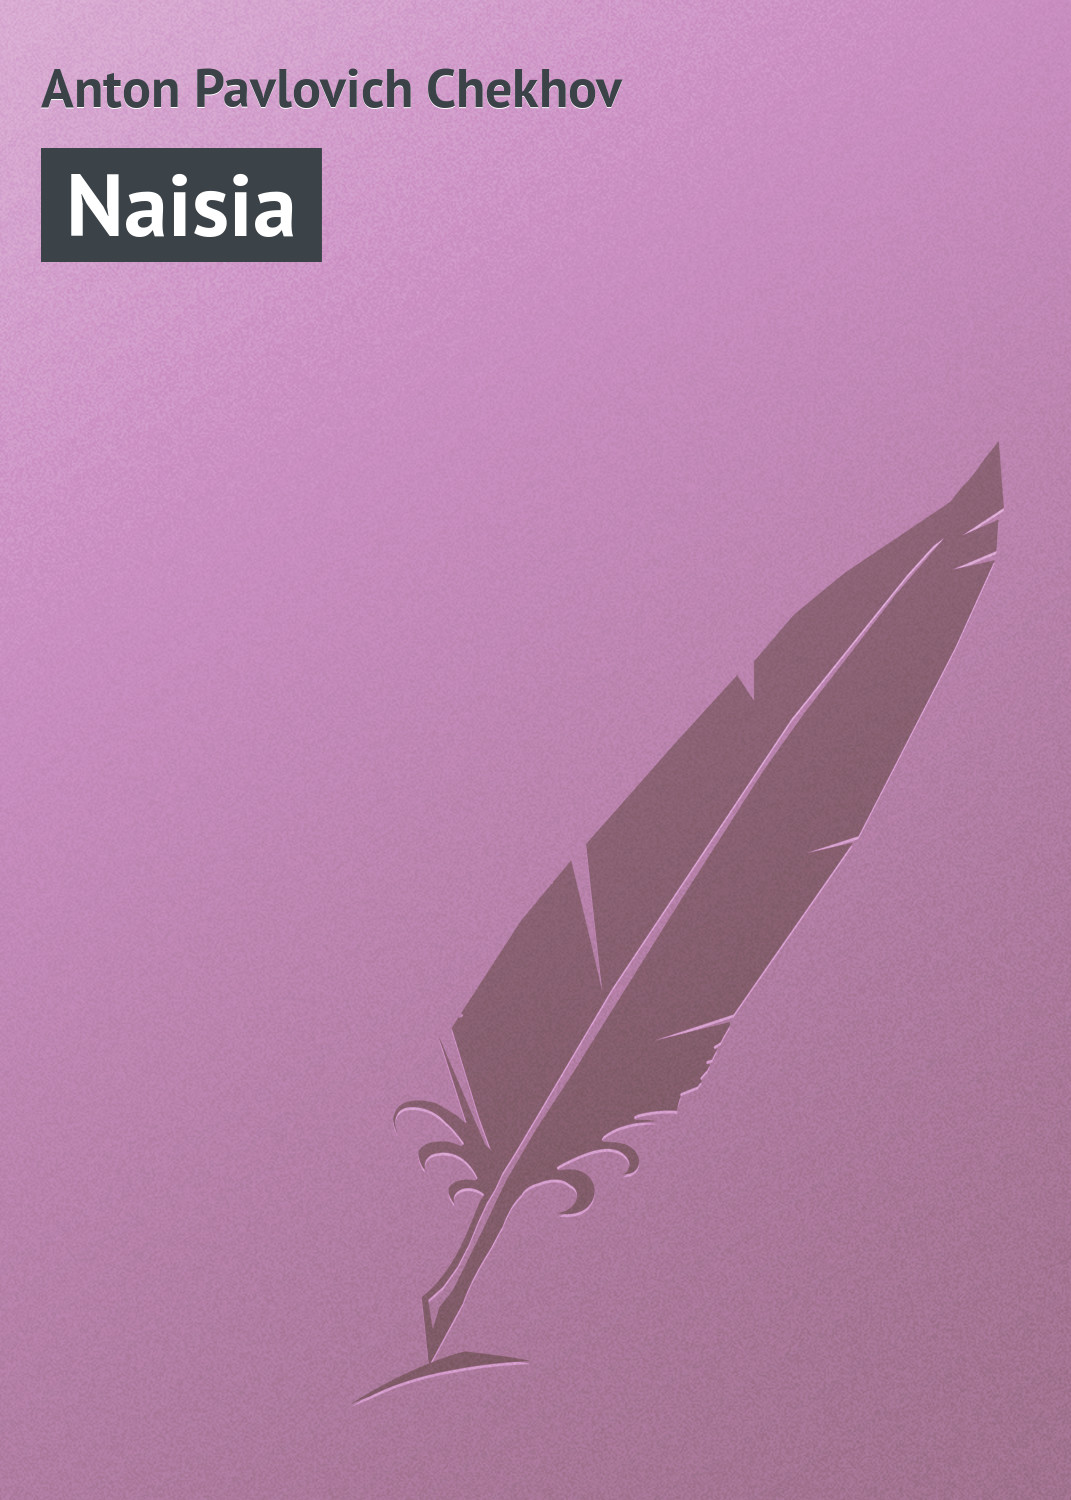 Книга Naisia из серии , созданная Anton Chekhov, может относится к жанру Литература 19 века, Русская классика. Стоимость электронной книги Naisia с идентификатором 23167259 составляет 5.99 руб.